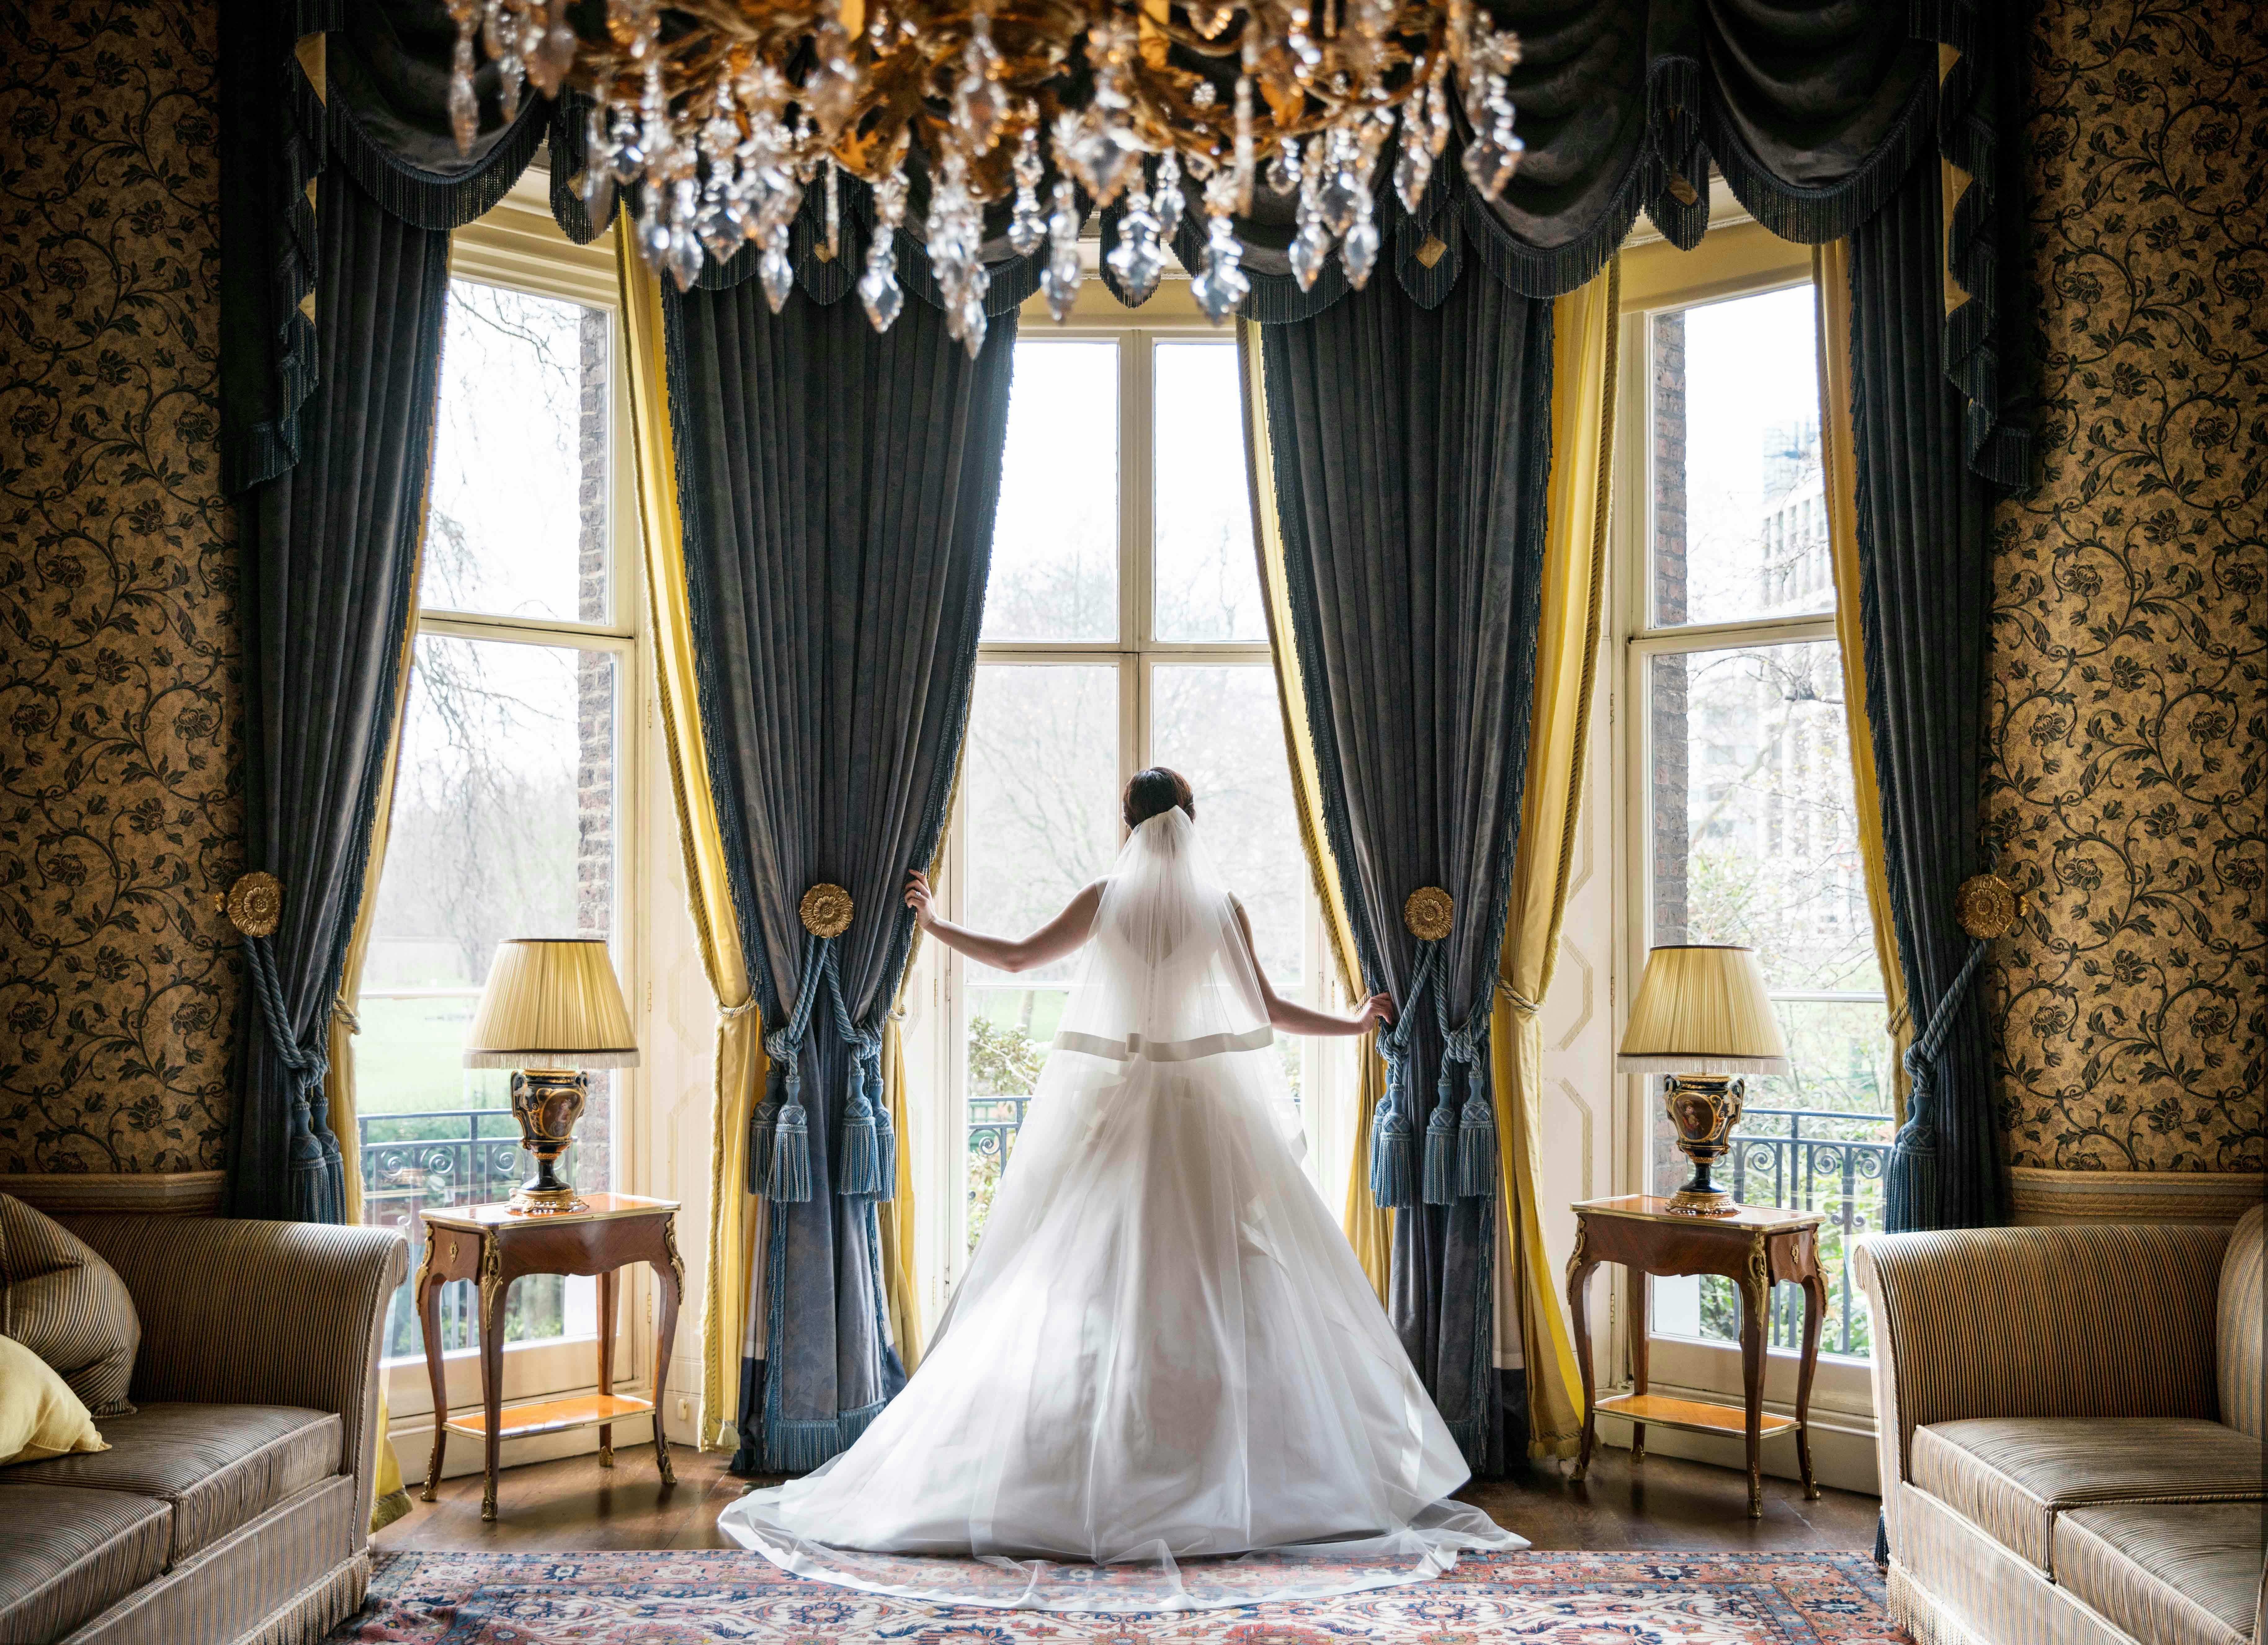 The Ritz London - The Queen Elizabeth Room image 1